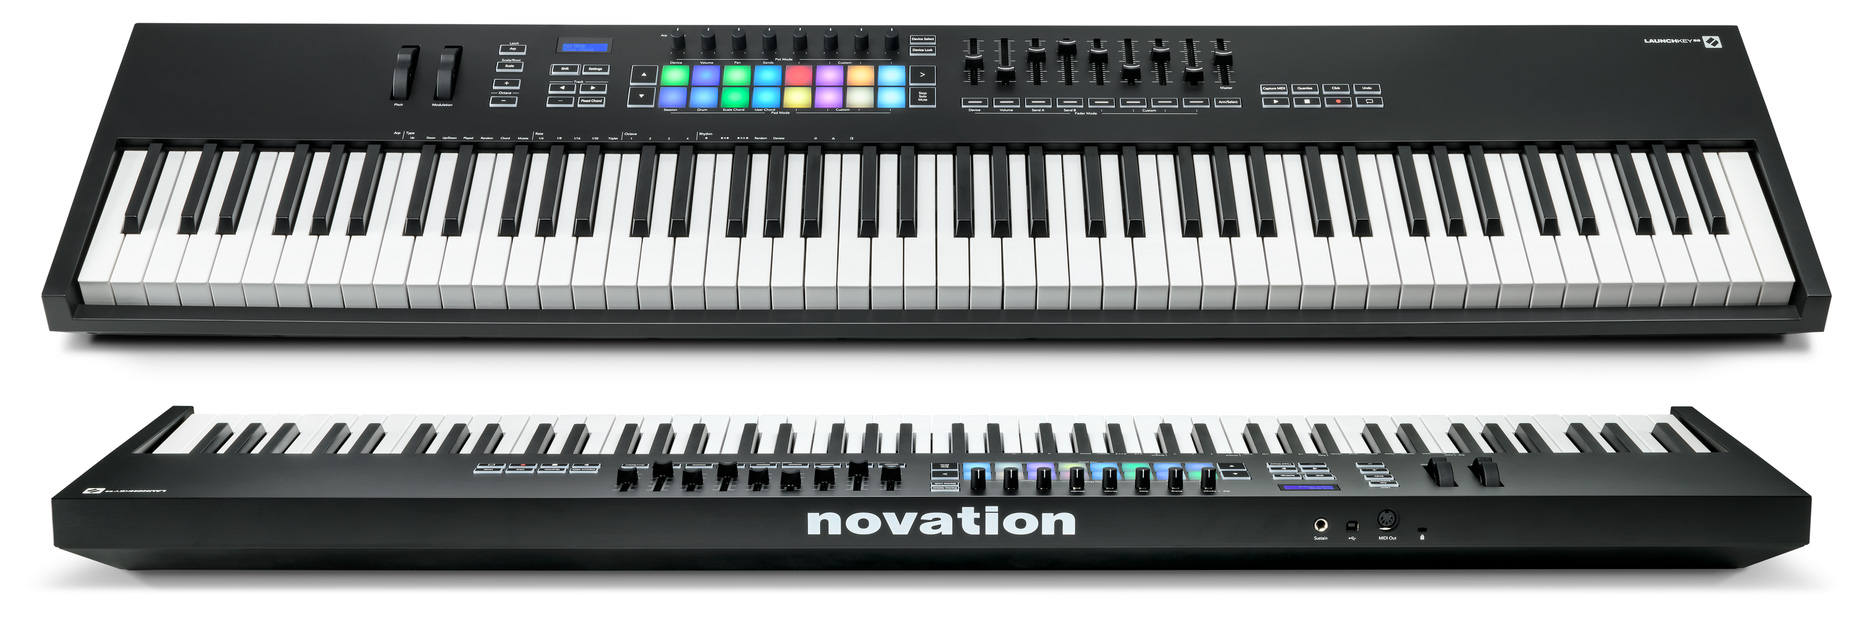 Vistas superior y posterior del teclado MIDI controlador Novation Launchkey 88 MK3 (LK88) -haz clic para ampliar